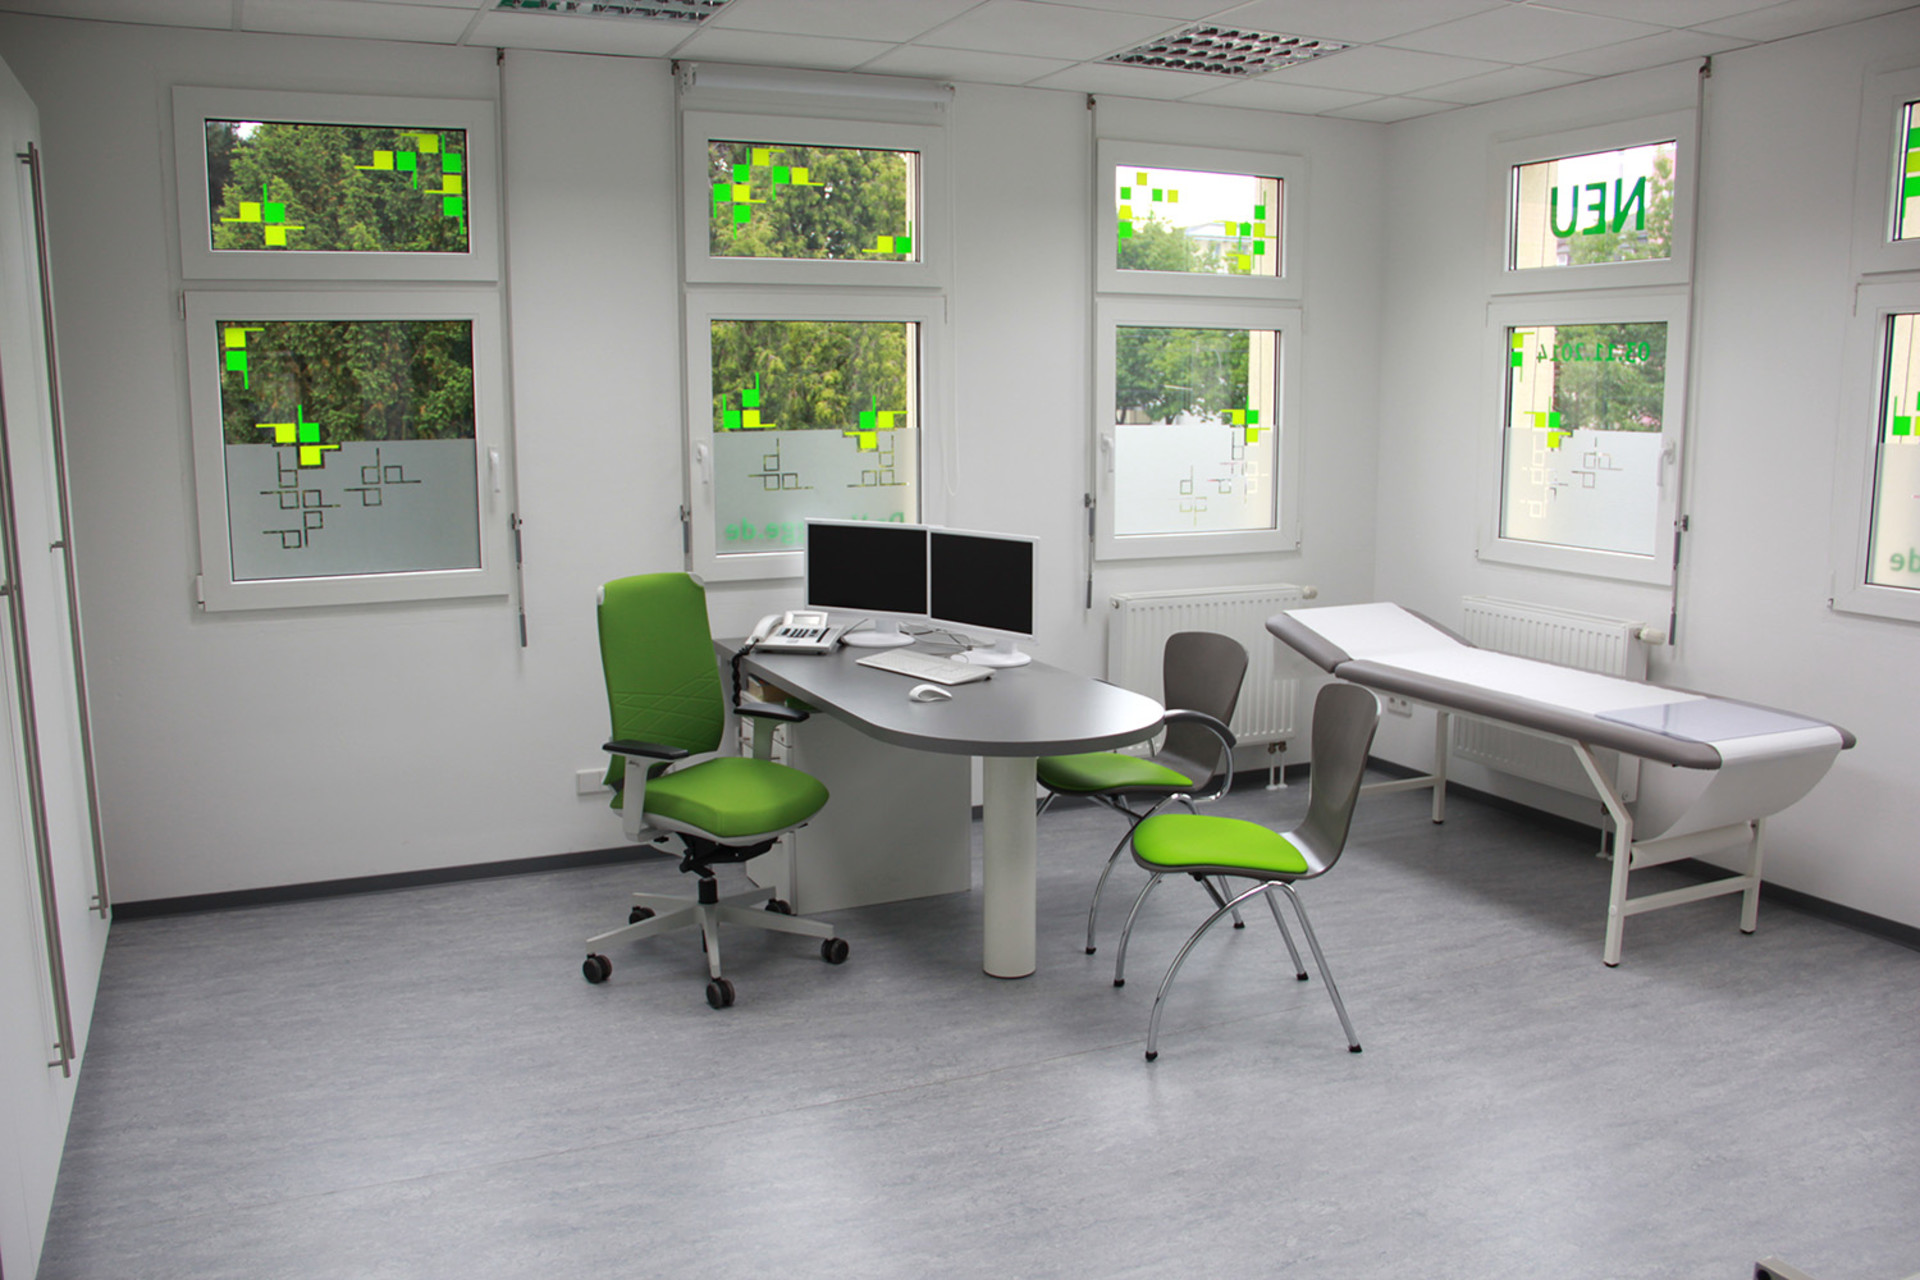 Behandlungszimmer mit Arzt- und Beratungsplatz in cleanem Design